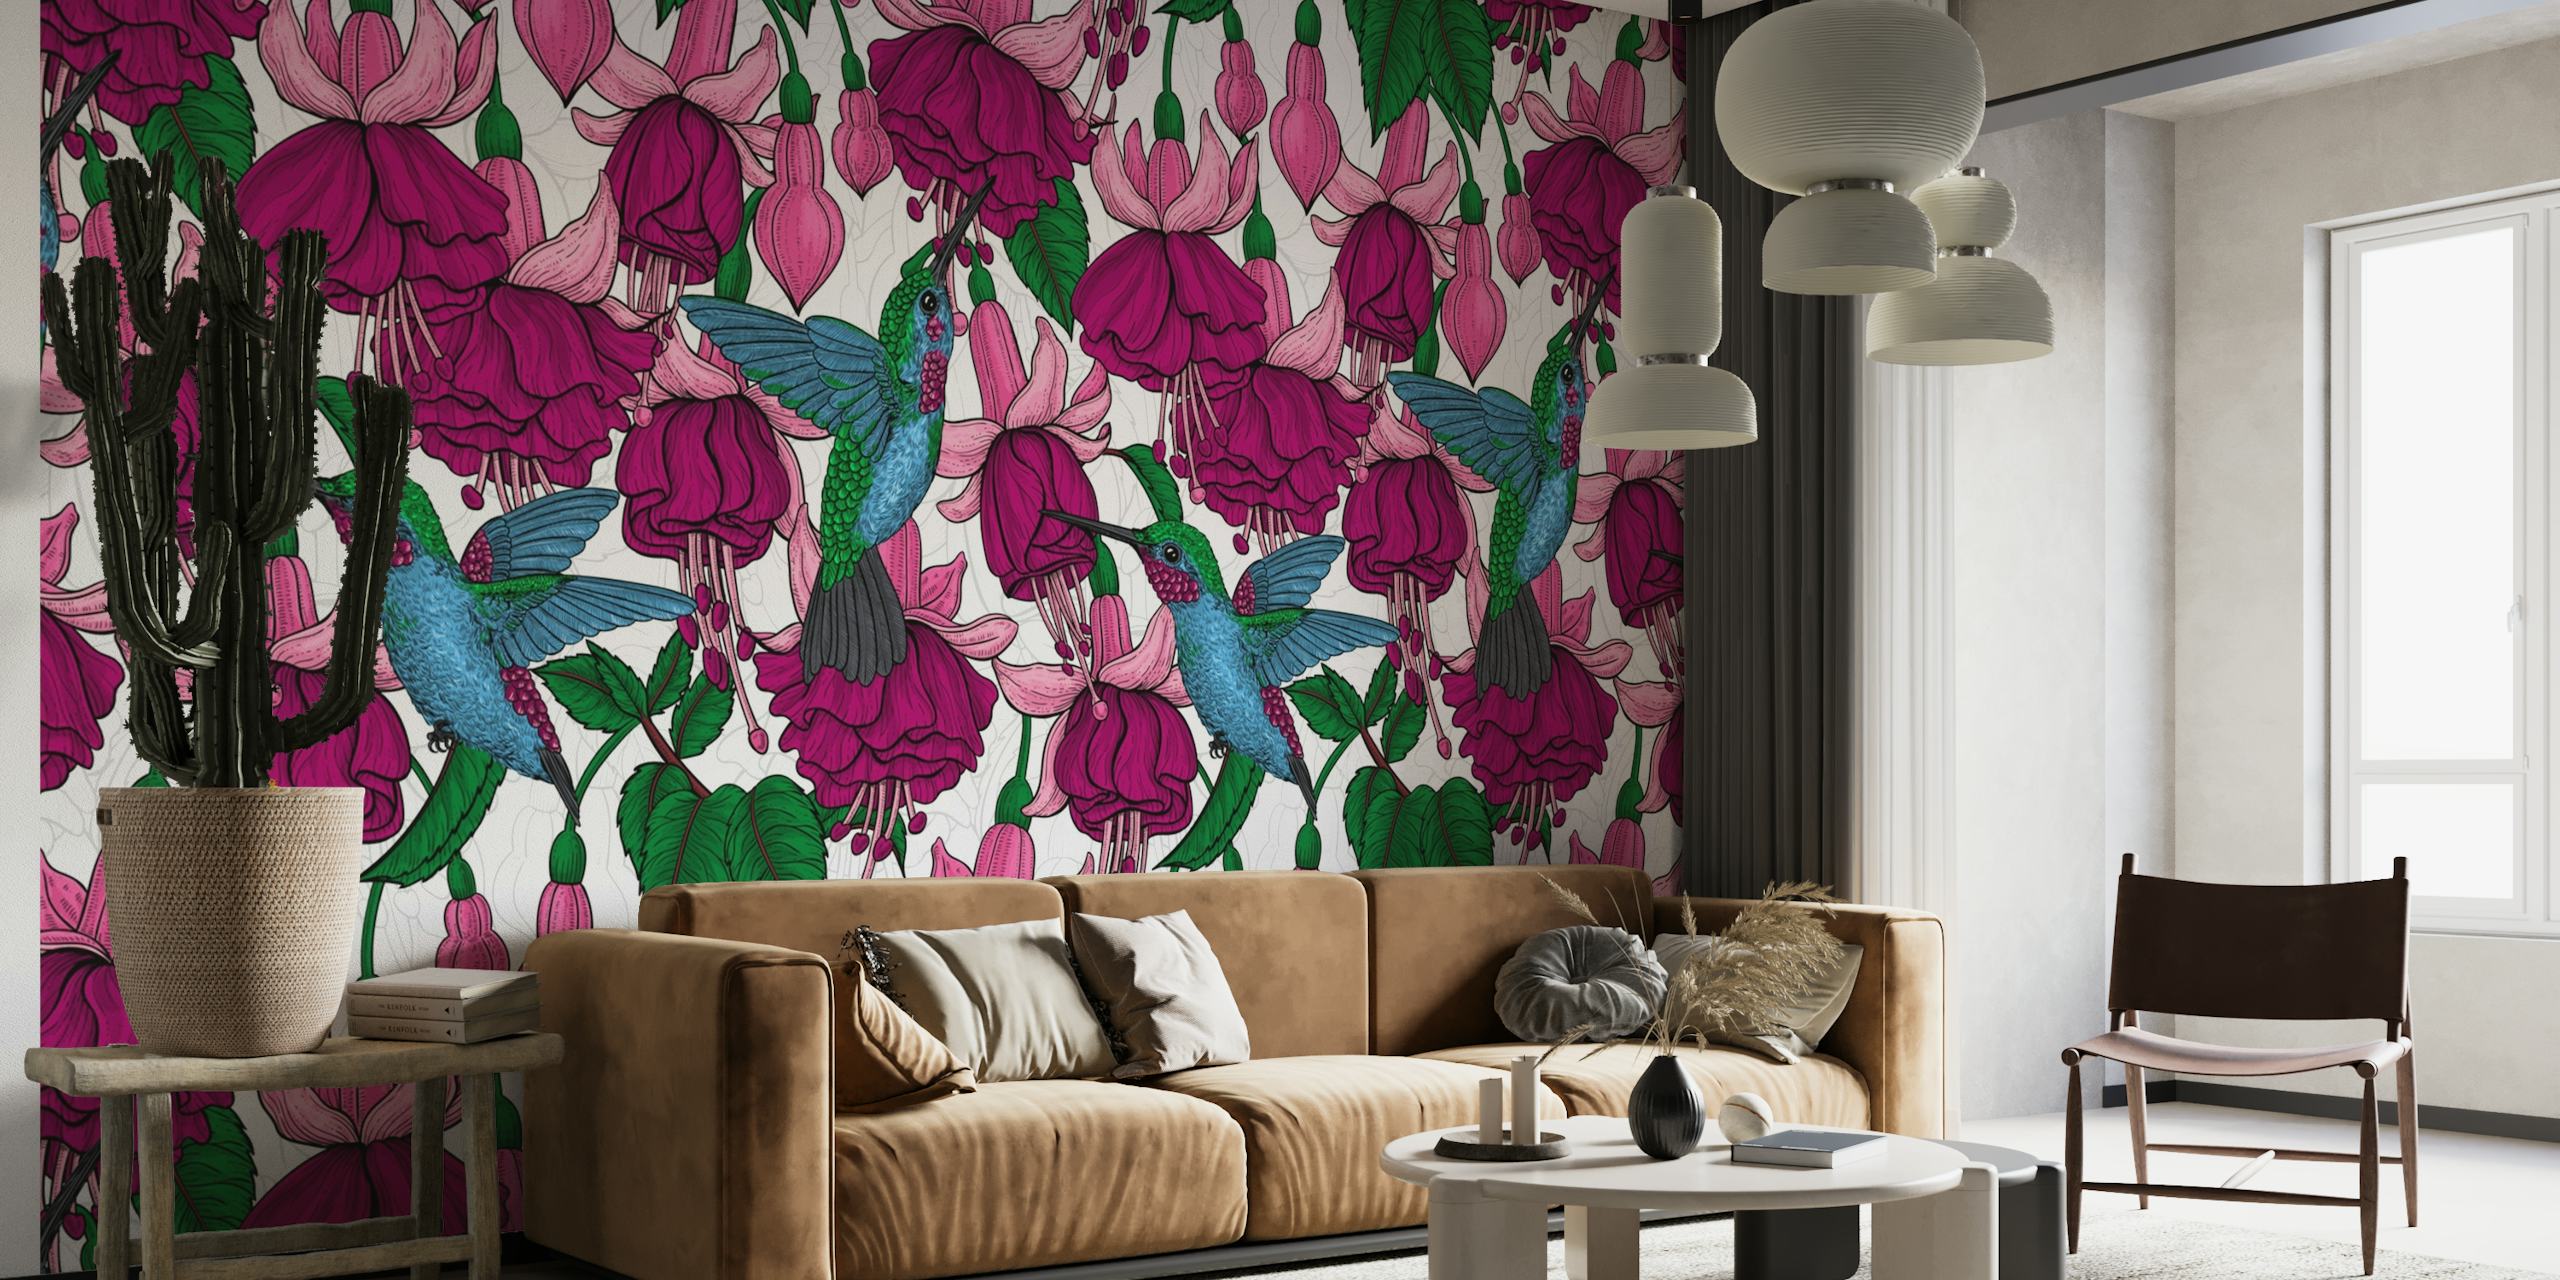 Um mural de parede com beija-flores e flores rosa fúcsia criando um cenário encantador de jardim.